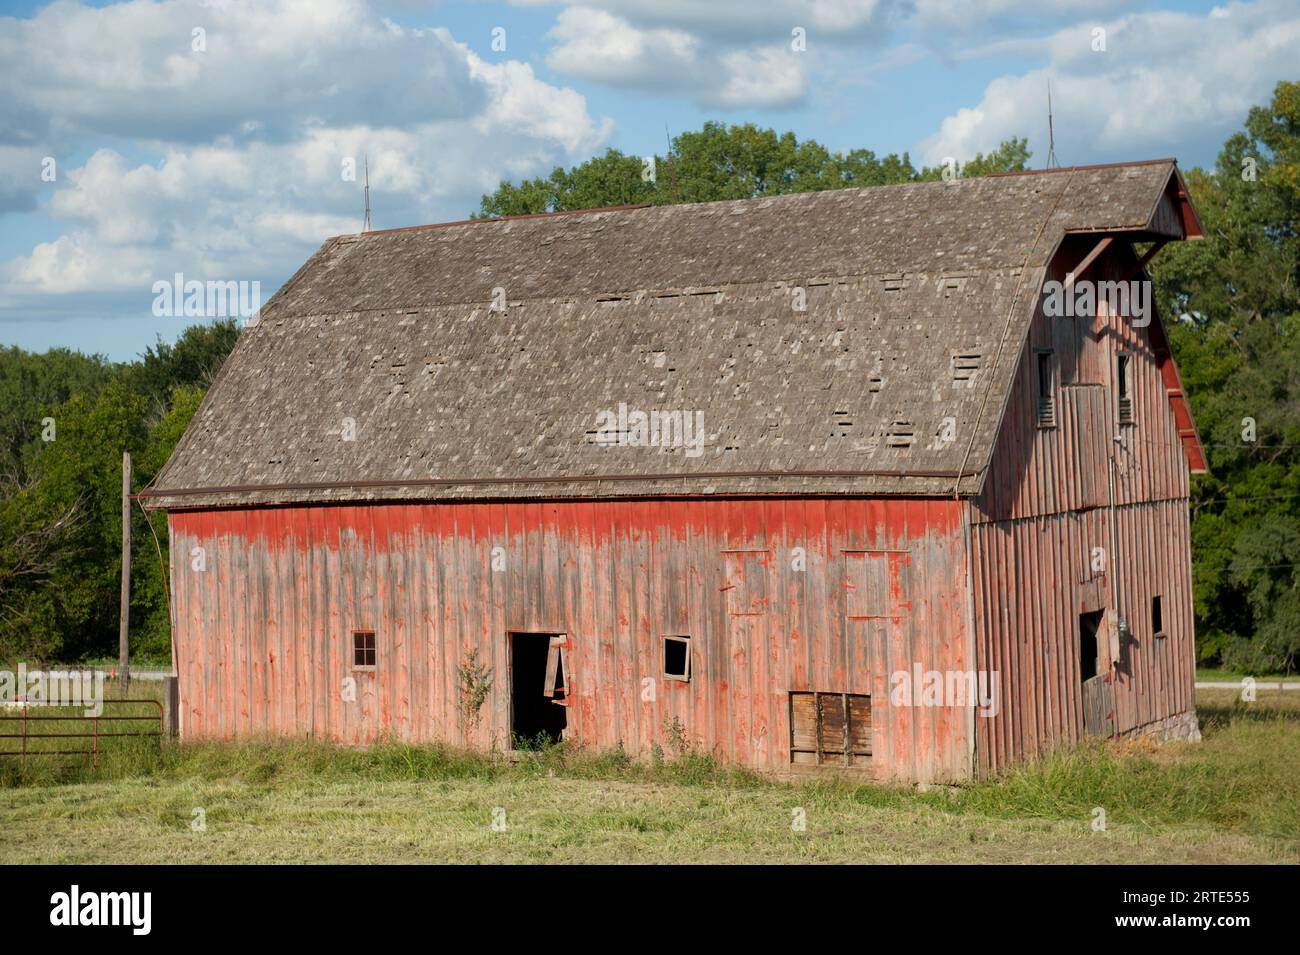 Verlassene Scheune mit verwitterter Fassade und verblasster roter Farbe, in der Nähe von Dunbar, Nebraska, USA; Dunbar, Nebraska, Vereinigte Staaten von Amerika Stockfoto